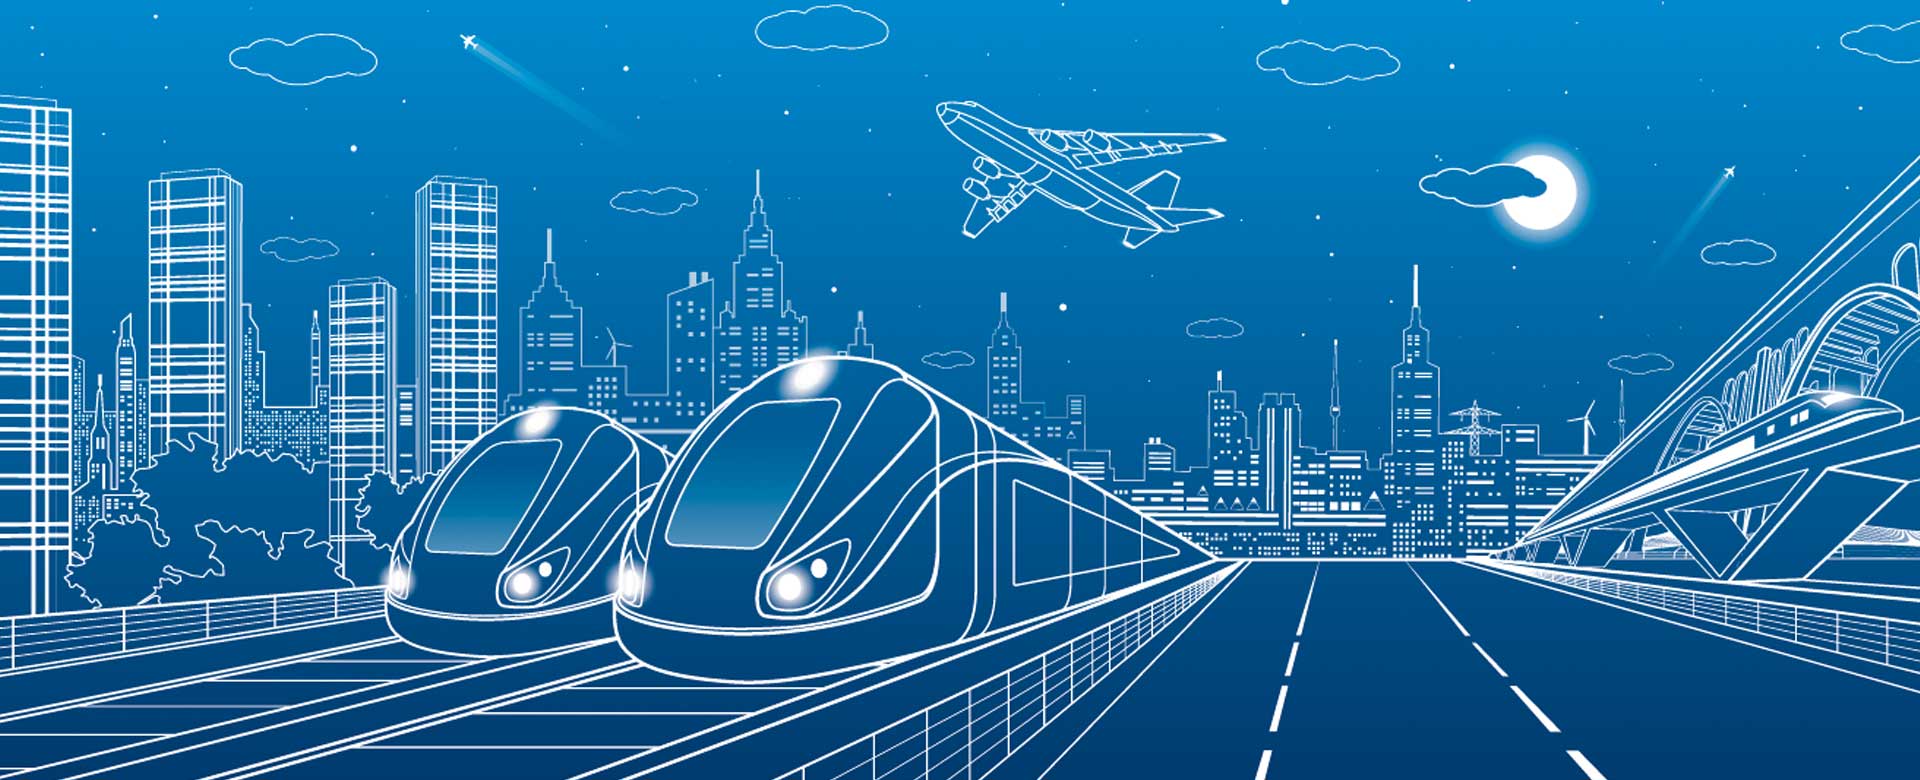 illustrazione grafica di treno e aereo